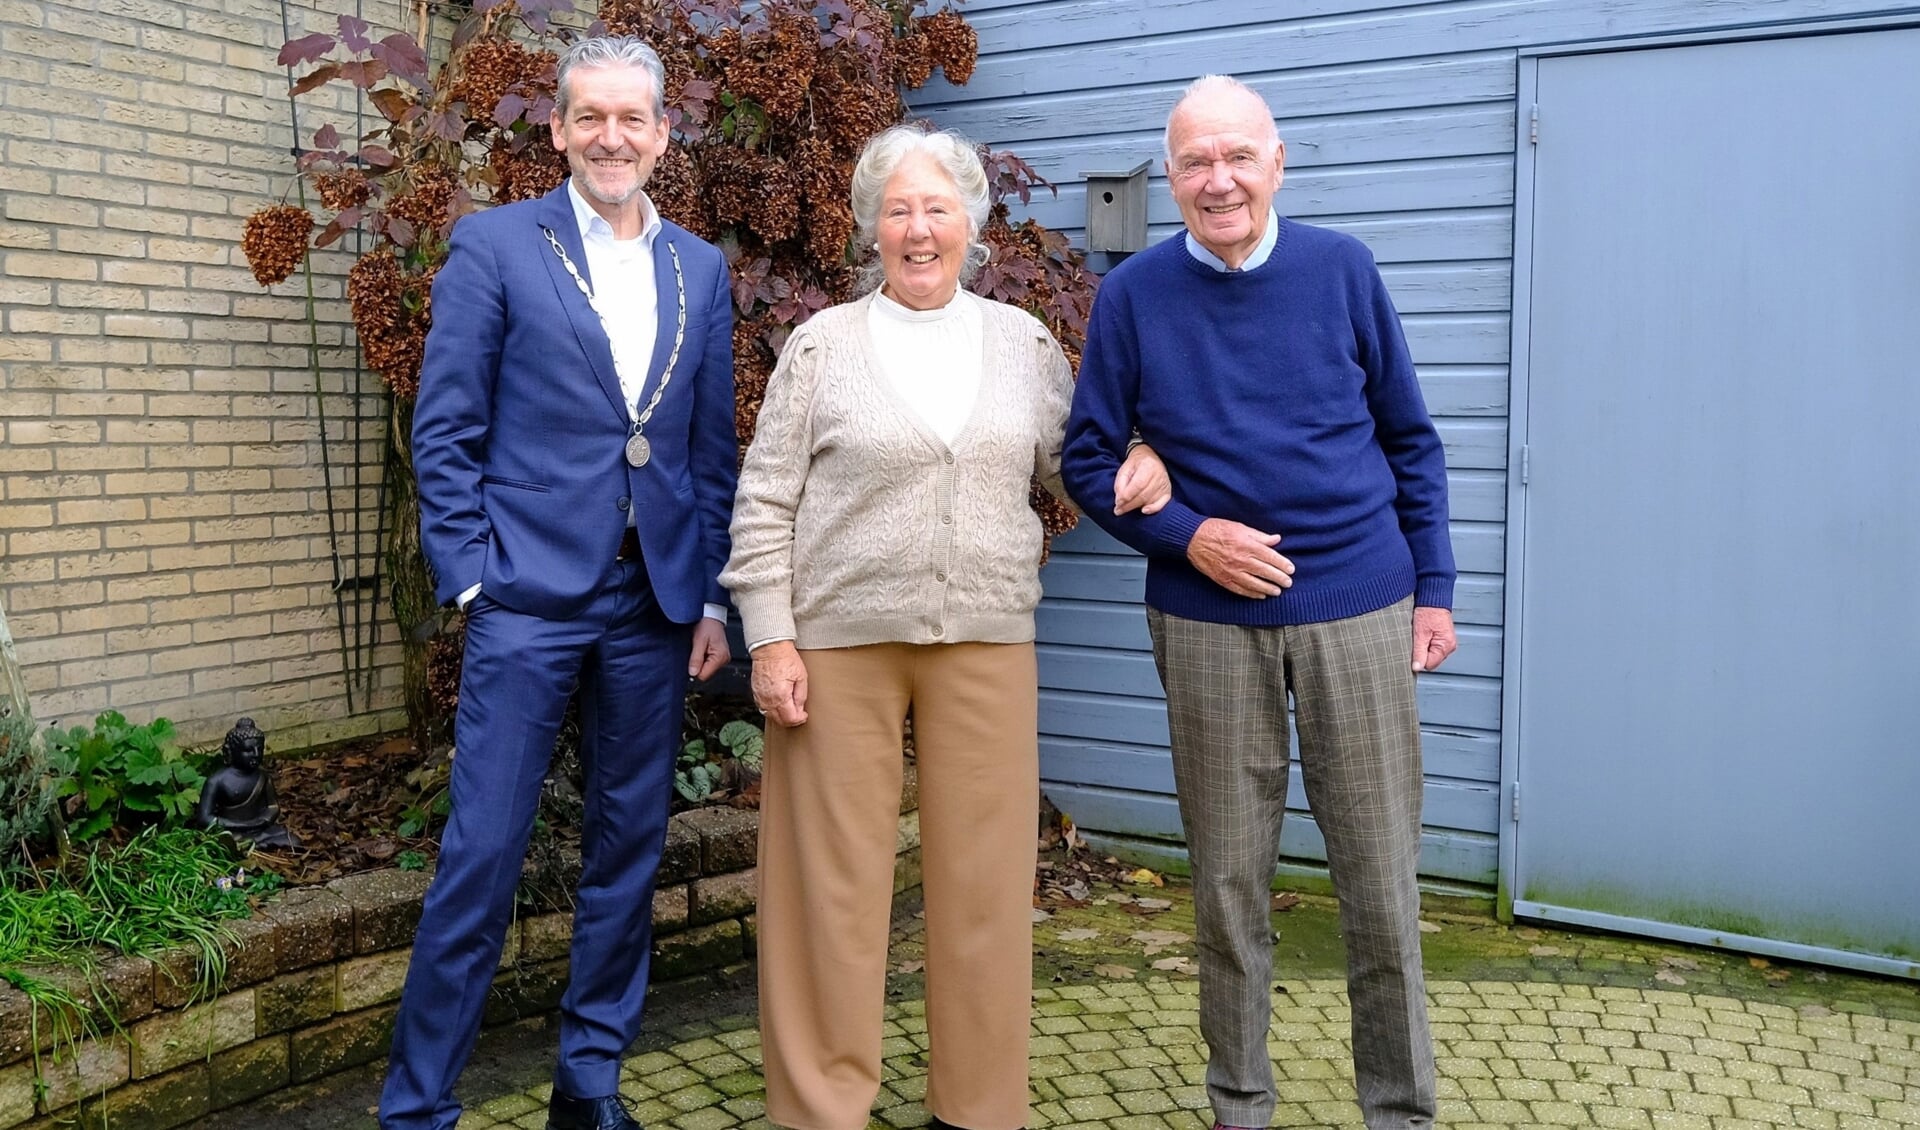 Het echtpaar Oechies-Ter Hoeve is maar liefst 65 jaar getrouwd. De Rhenense burgemeester Hans van der Pas bracht namens de gemeente Rhenen zijn felicitaties over.